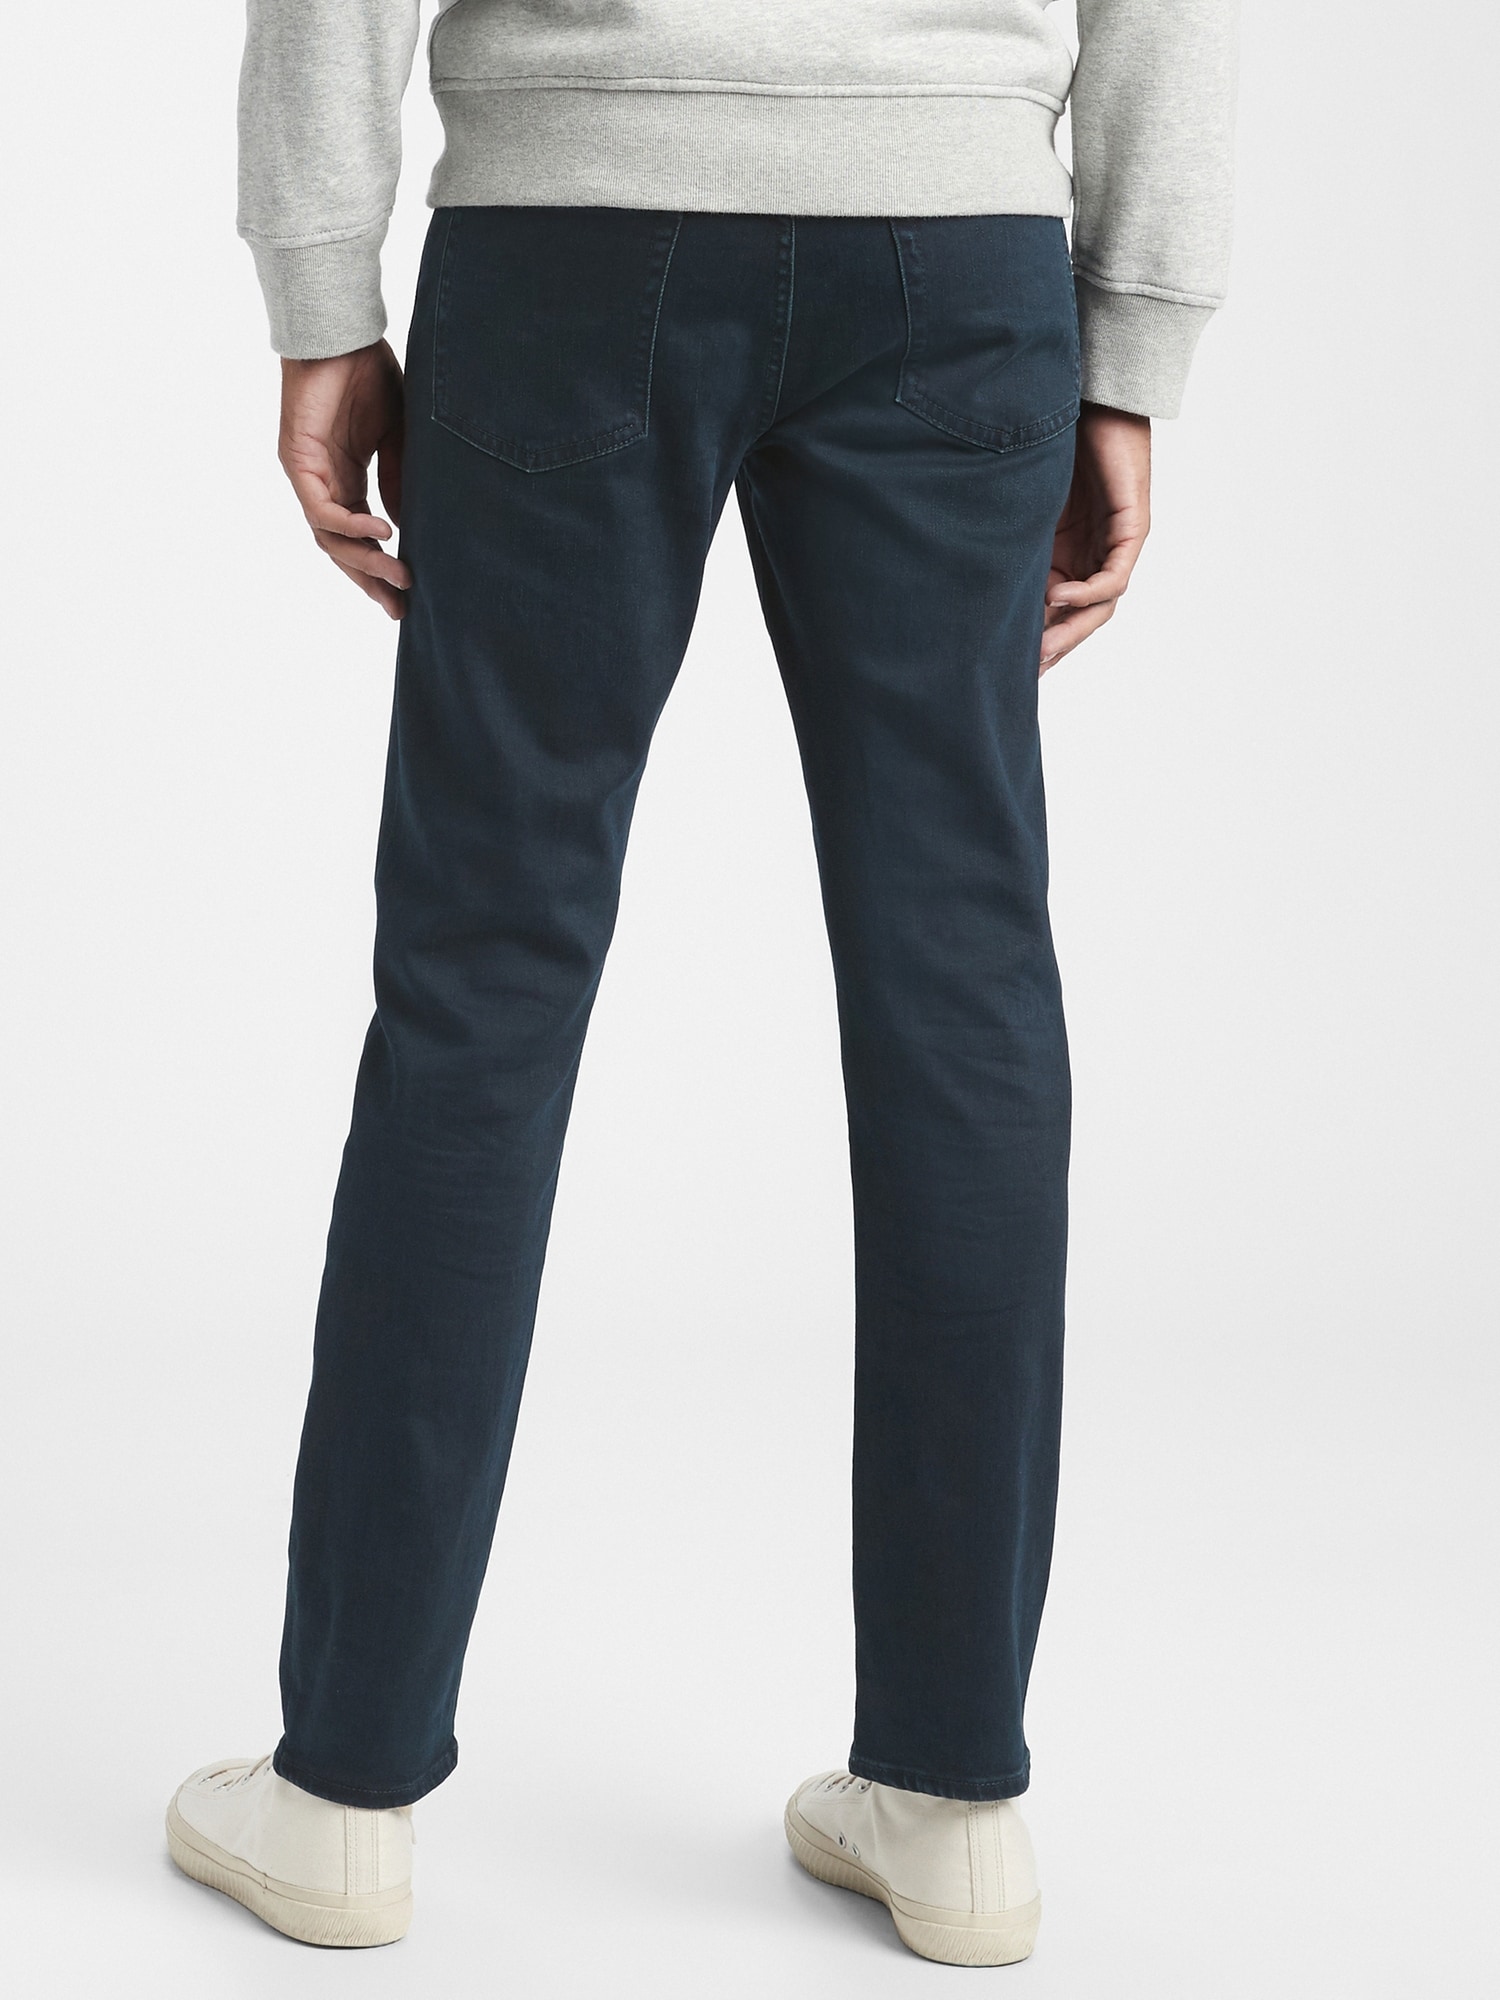 Gap Flex Soft Wear Slim Jean Pantolon. 2